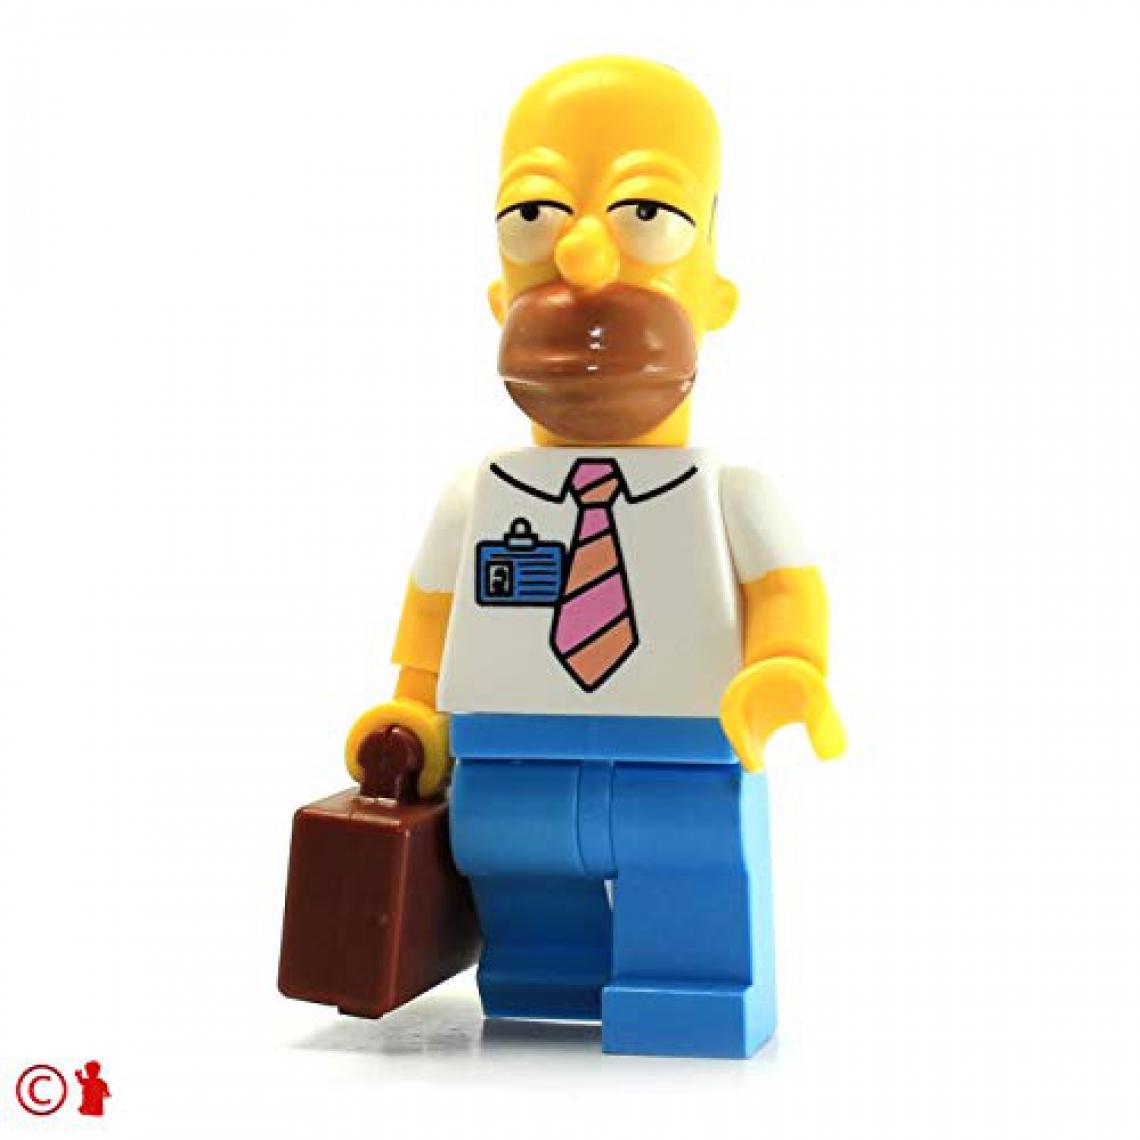 Lego - Figurine LEgO Simpsons - Version de la centrale électrique Homer Simpson avec valise et saucisse (71006) - Briques et blocs